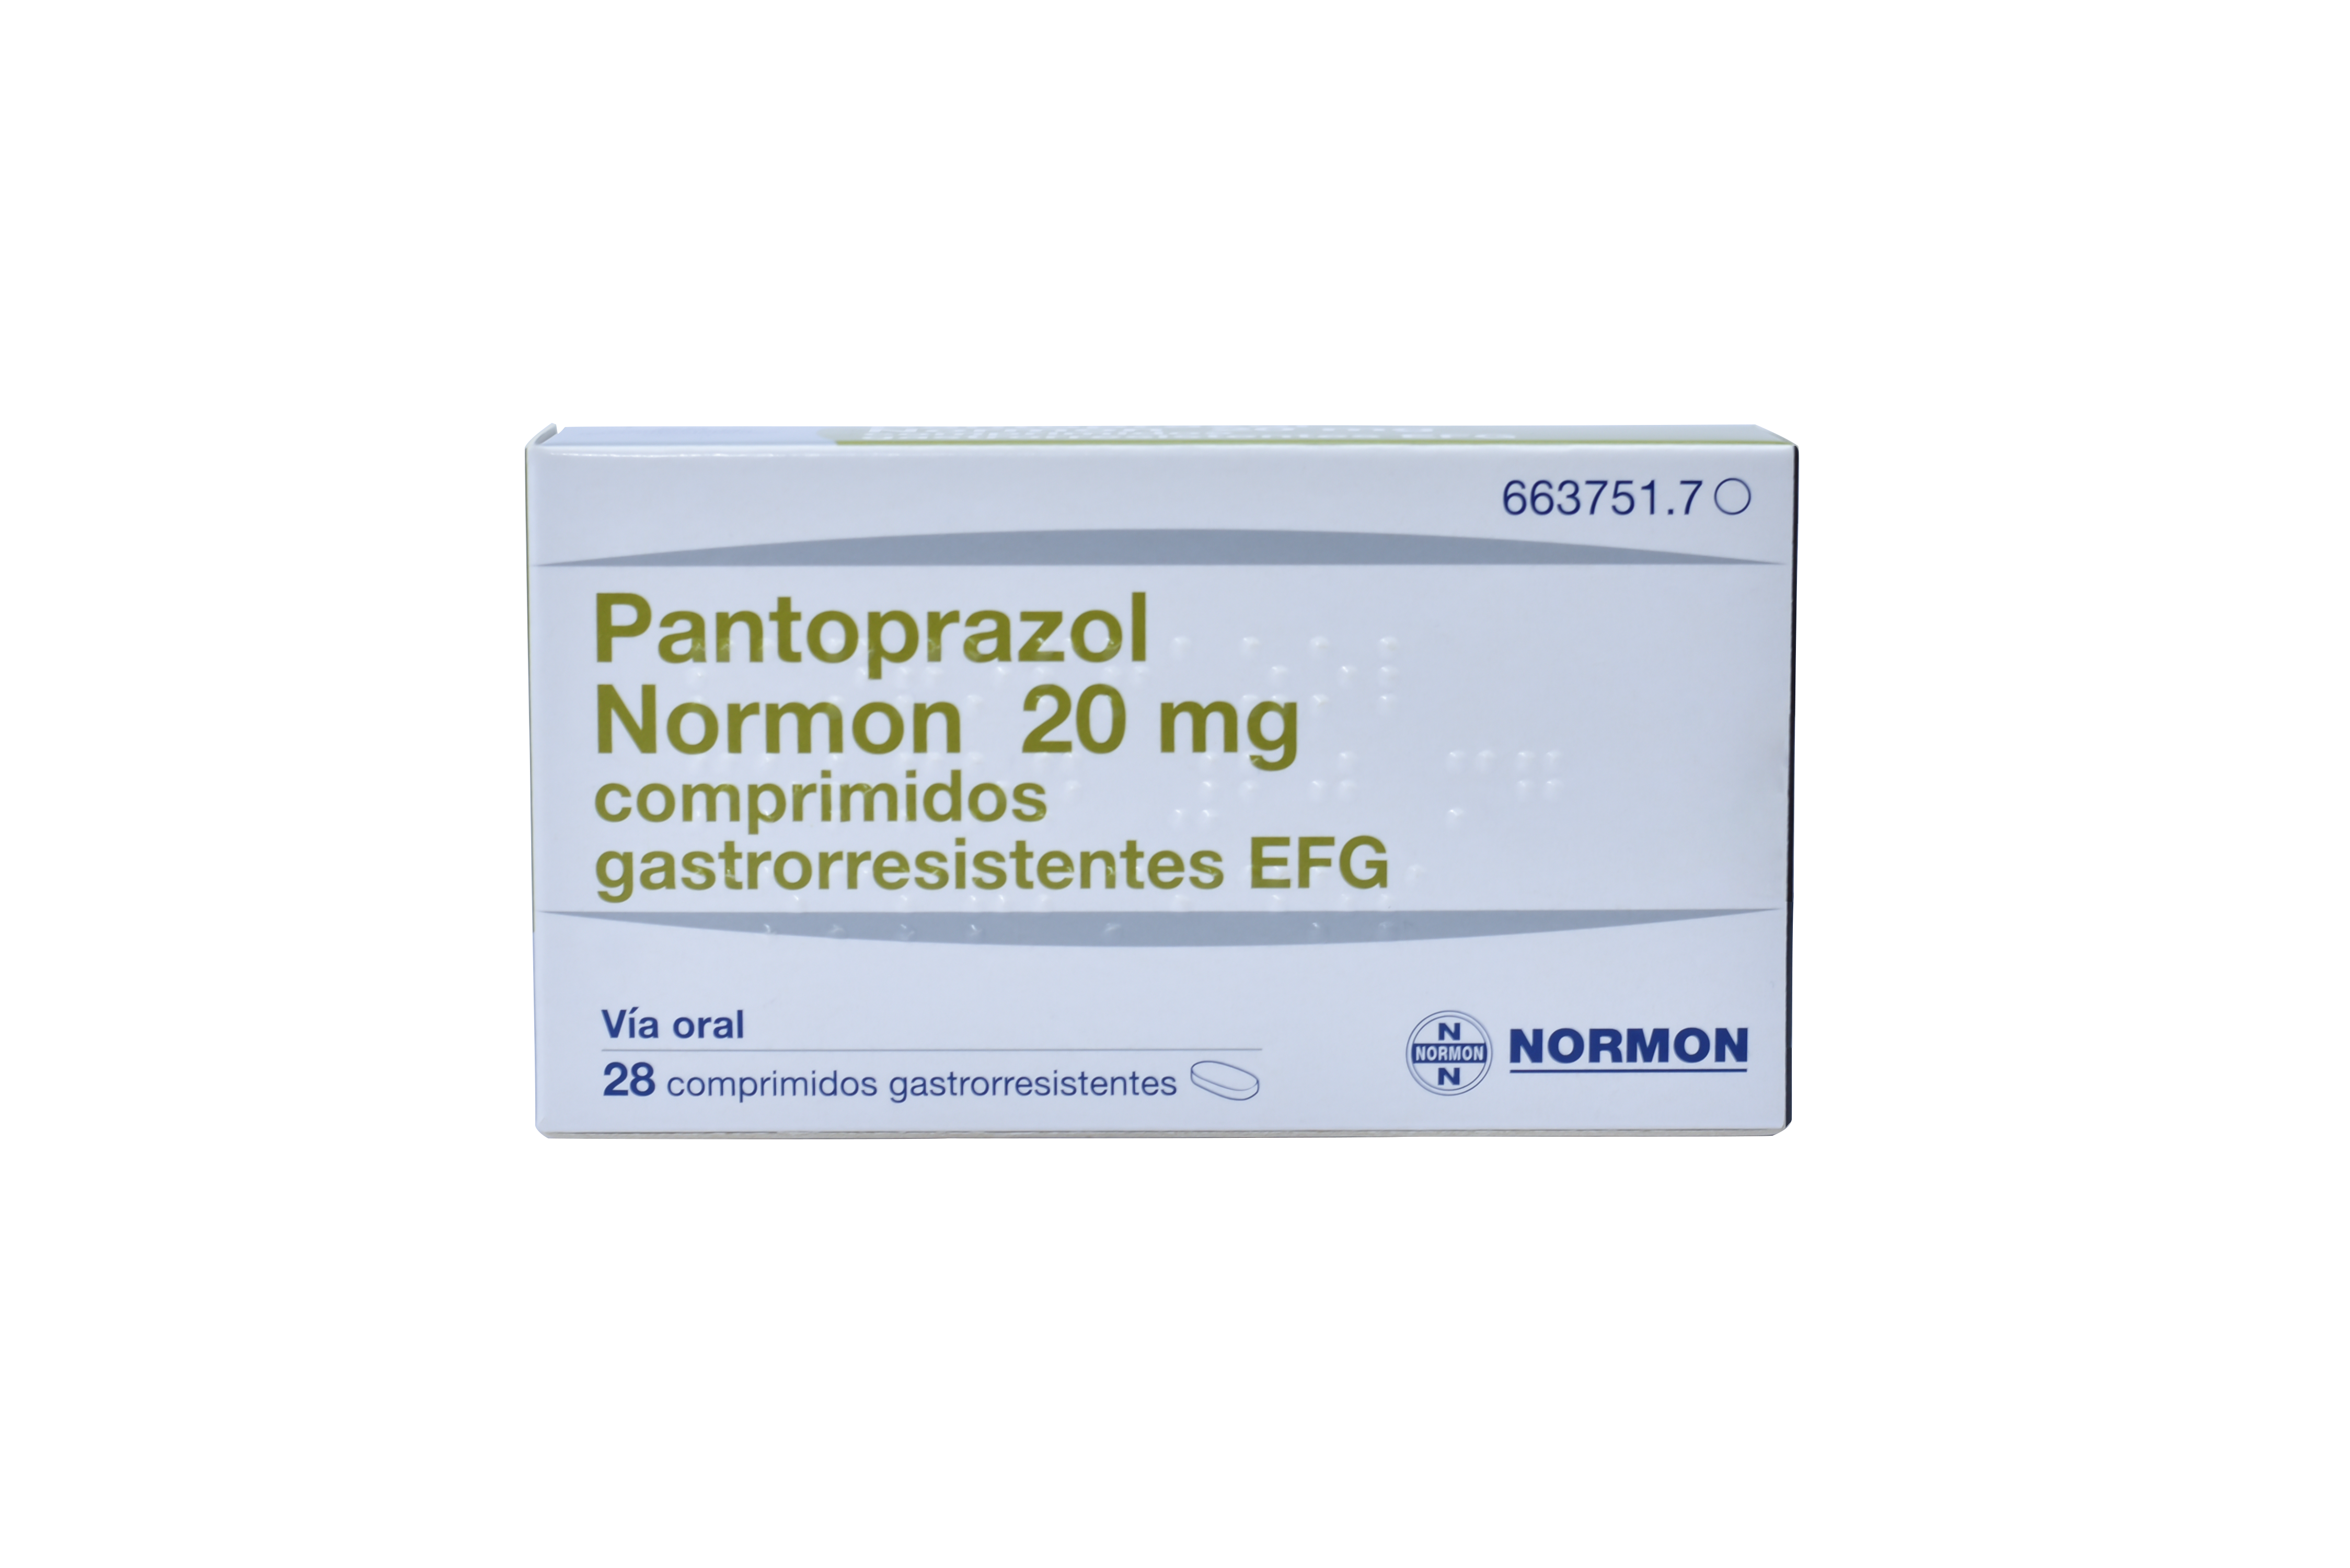 პანტოპრაზოლი ნორმონი / Pantoprazole NORMON